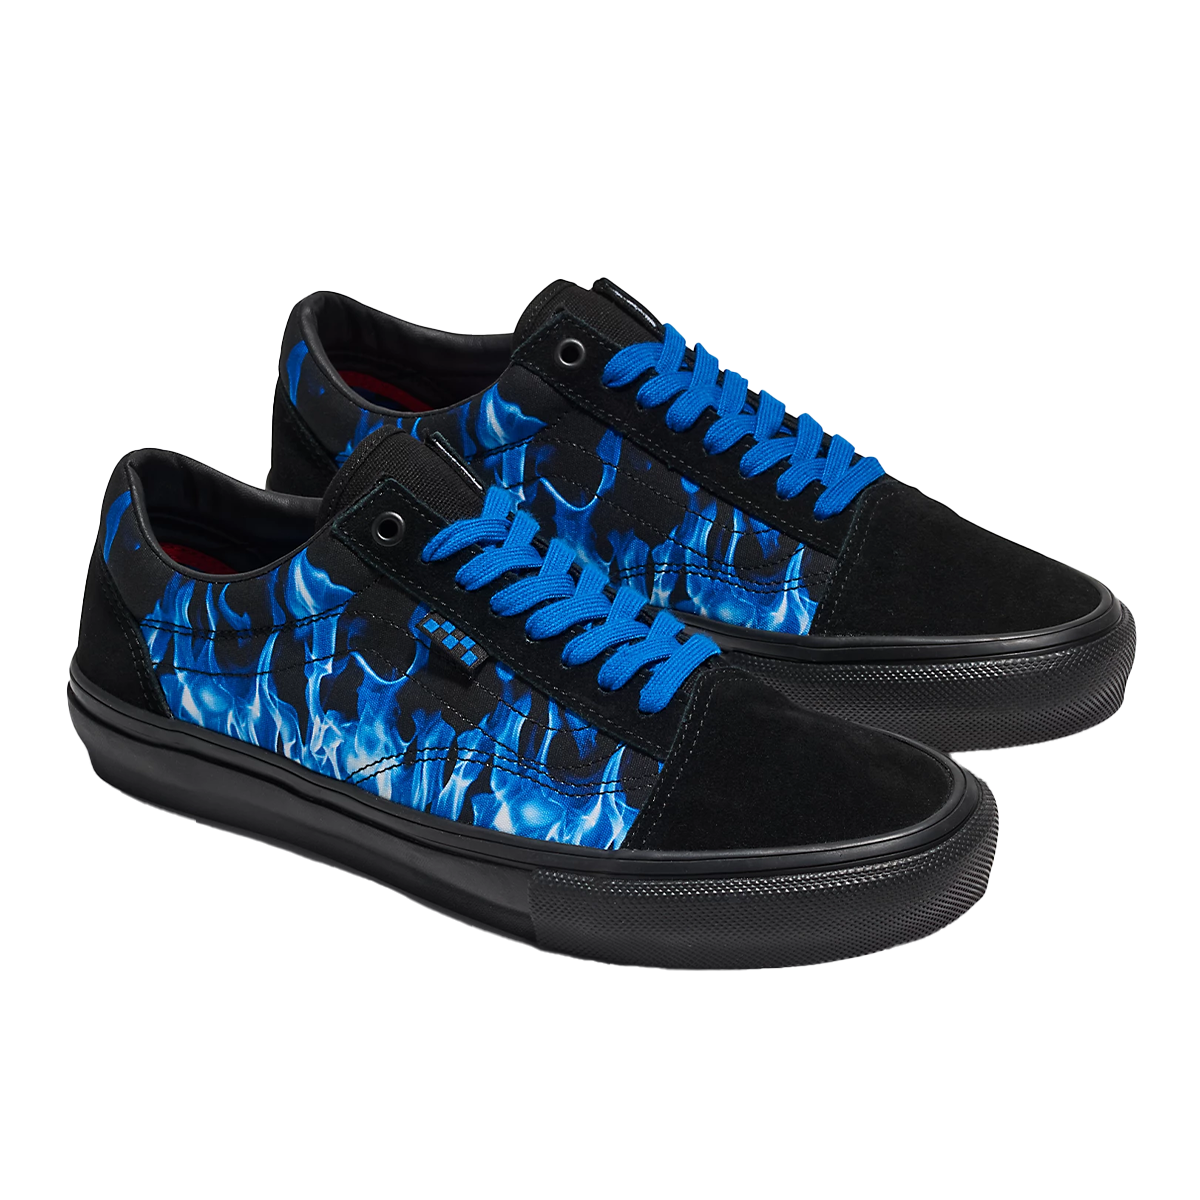 Vans Skate Old Skool Shoe - Y2k Hot Blue